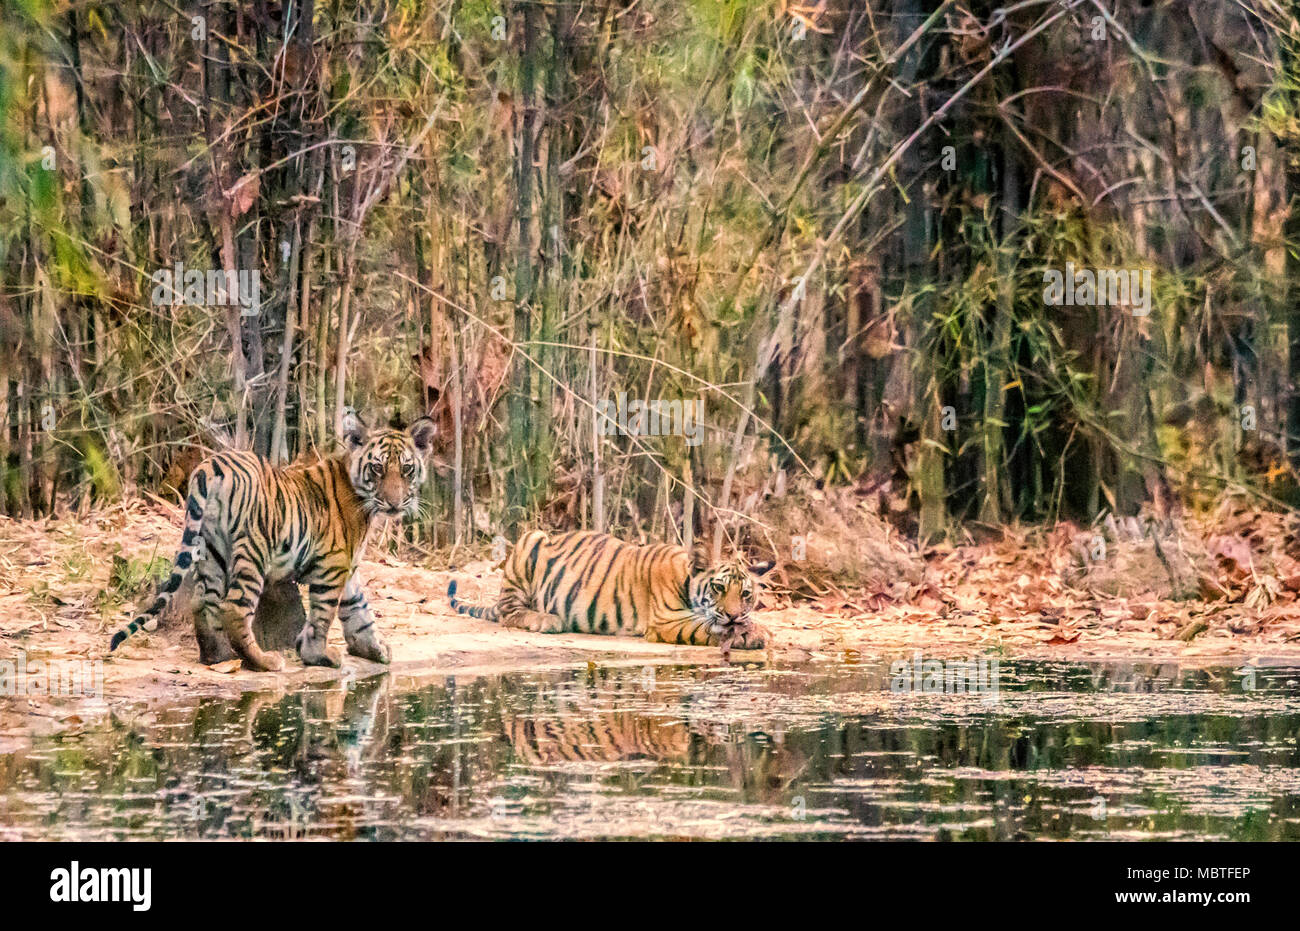 Deux adorables petits oursons sauvages tigre du Bengale, Panthera tigris tigris, frères et sœurs, par un point d'eau dans la Réserve de tigres de Bandhavgarh, Madhya Pradesh, Inde Banque D'Images